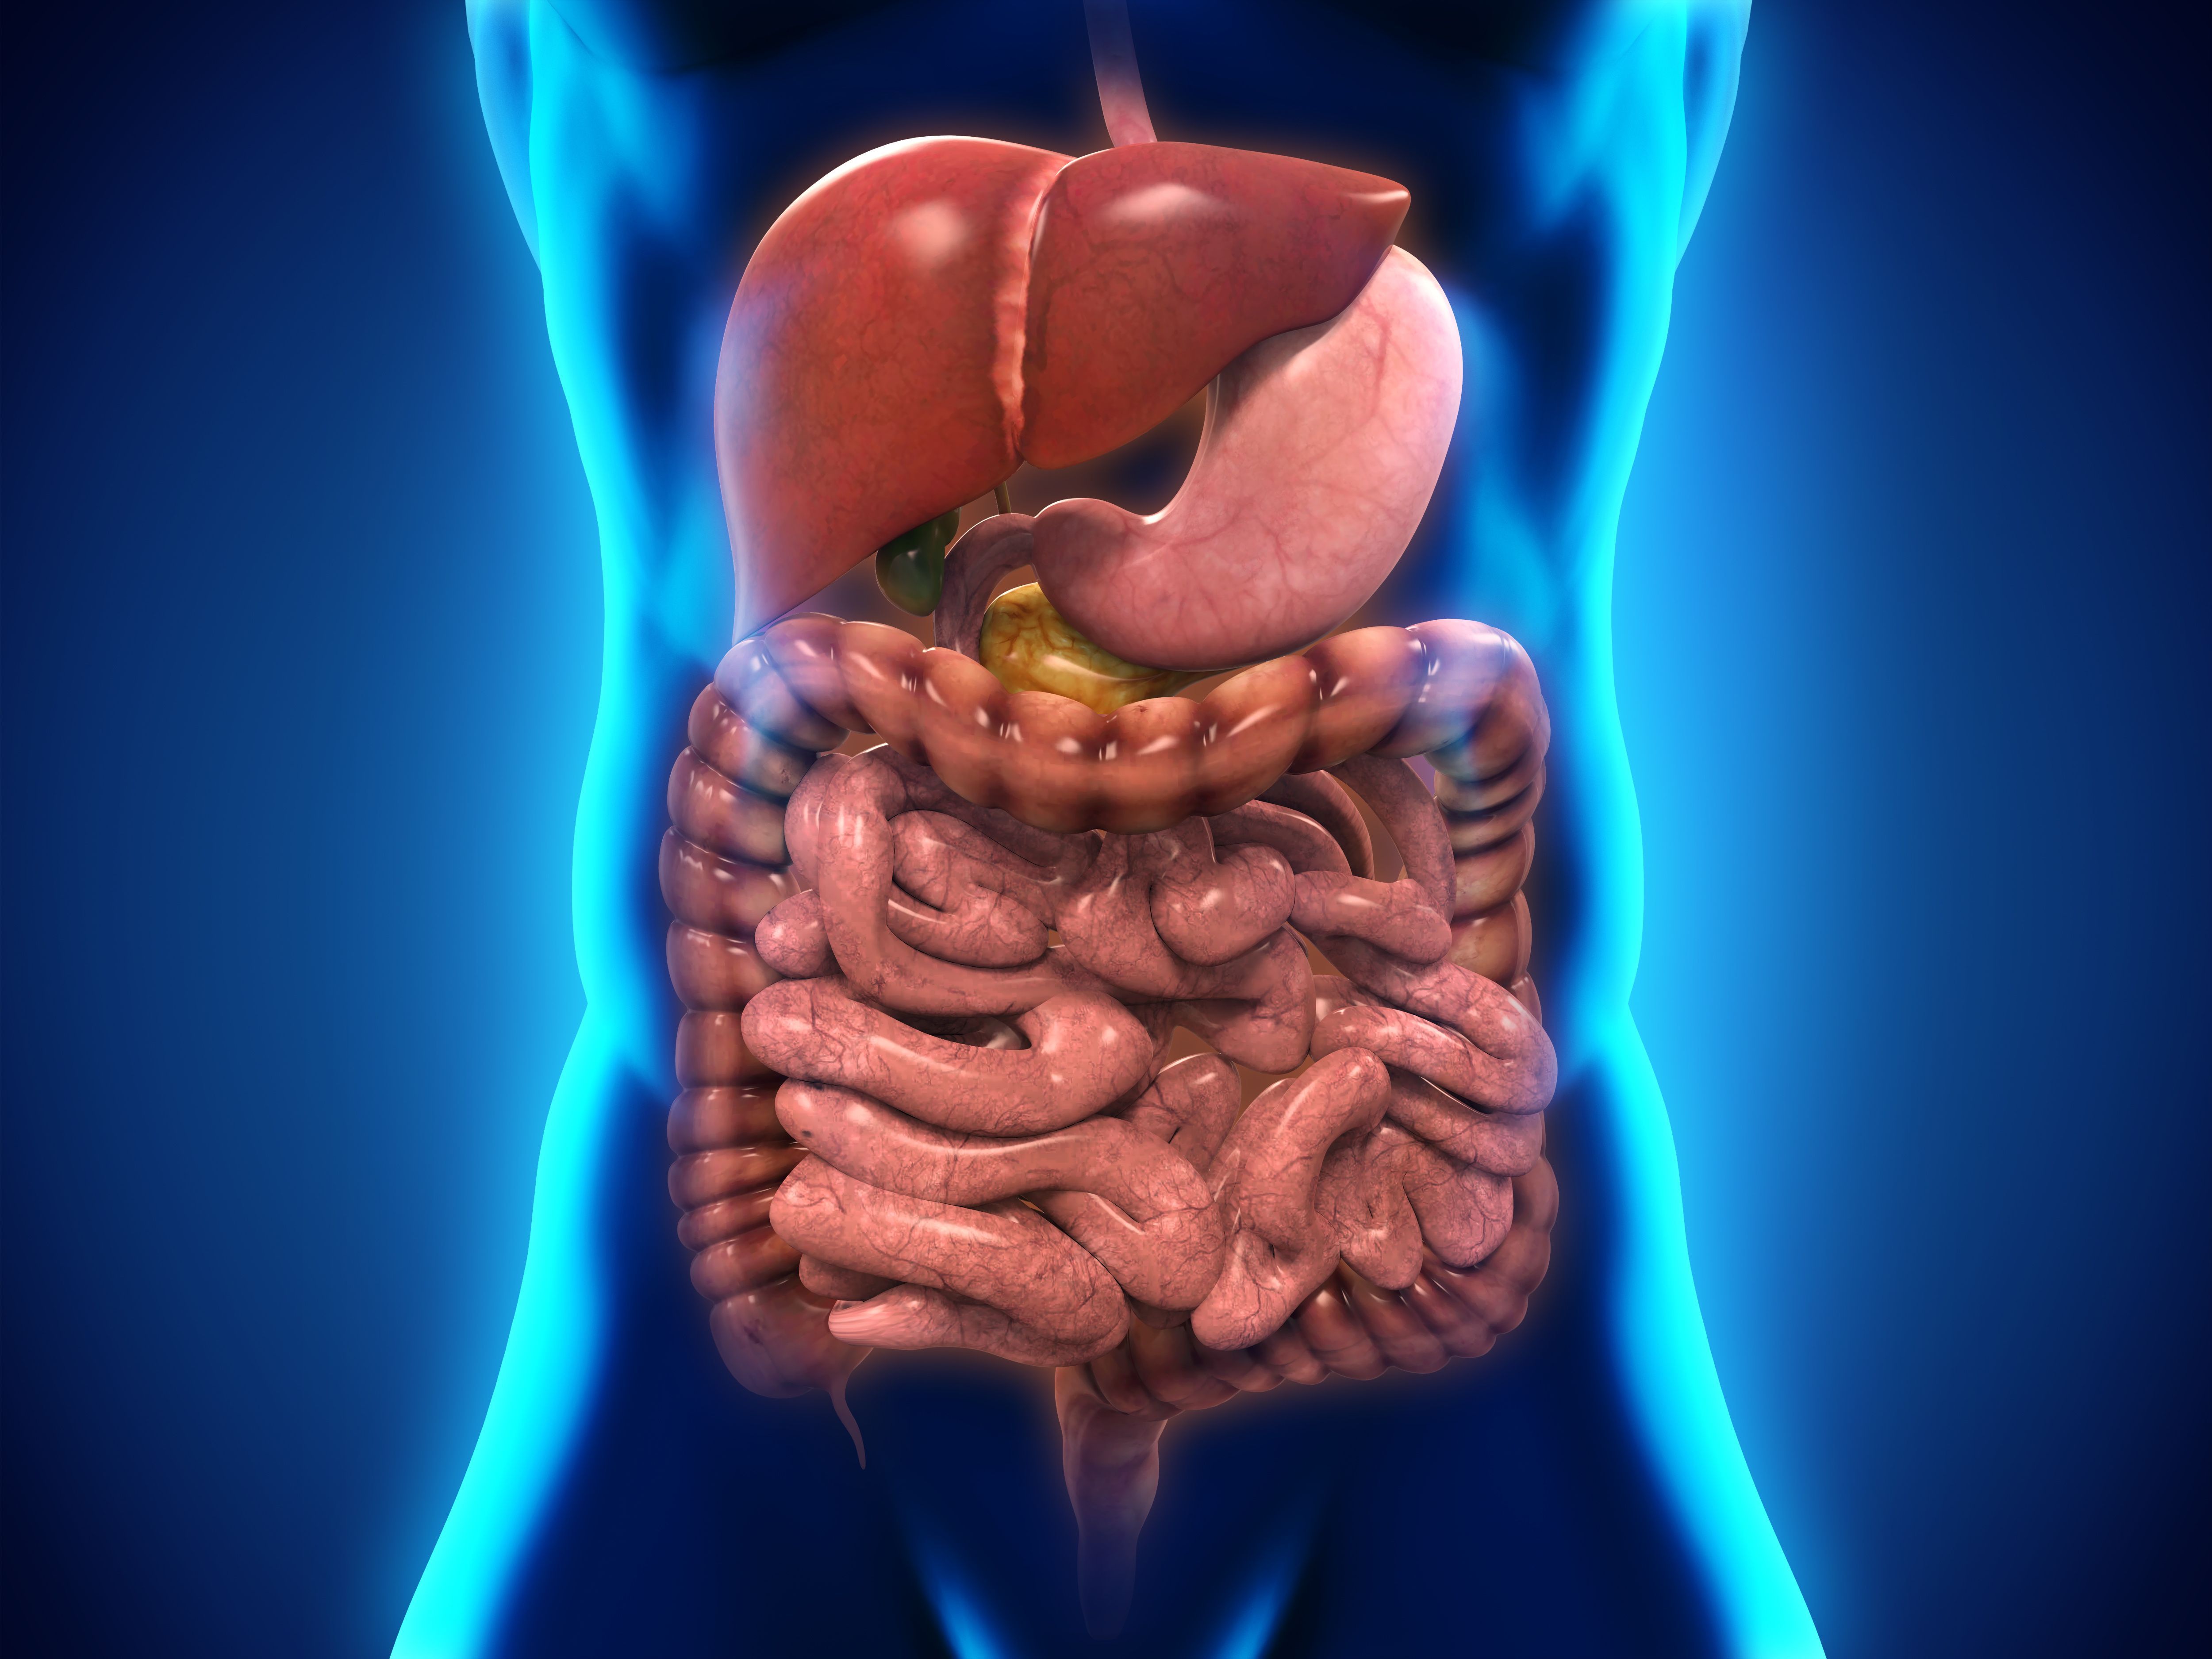 Органы желудок кишечник печень. Пищеварительная система ЖКТ человека. Пищеварительный тракт человека. Органы человека желудок и пищеварительная система. ЖКТ желудочно-кишечный тракт.